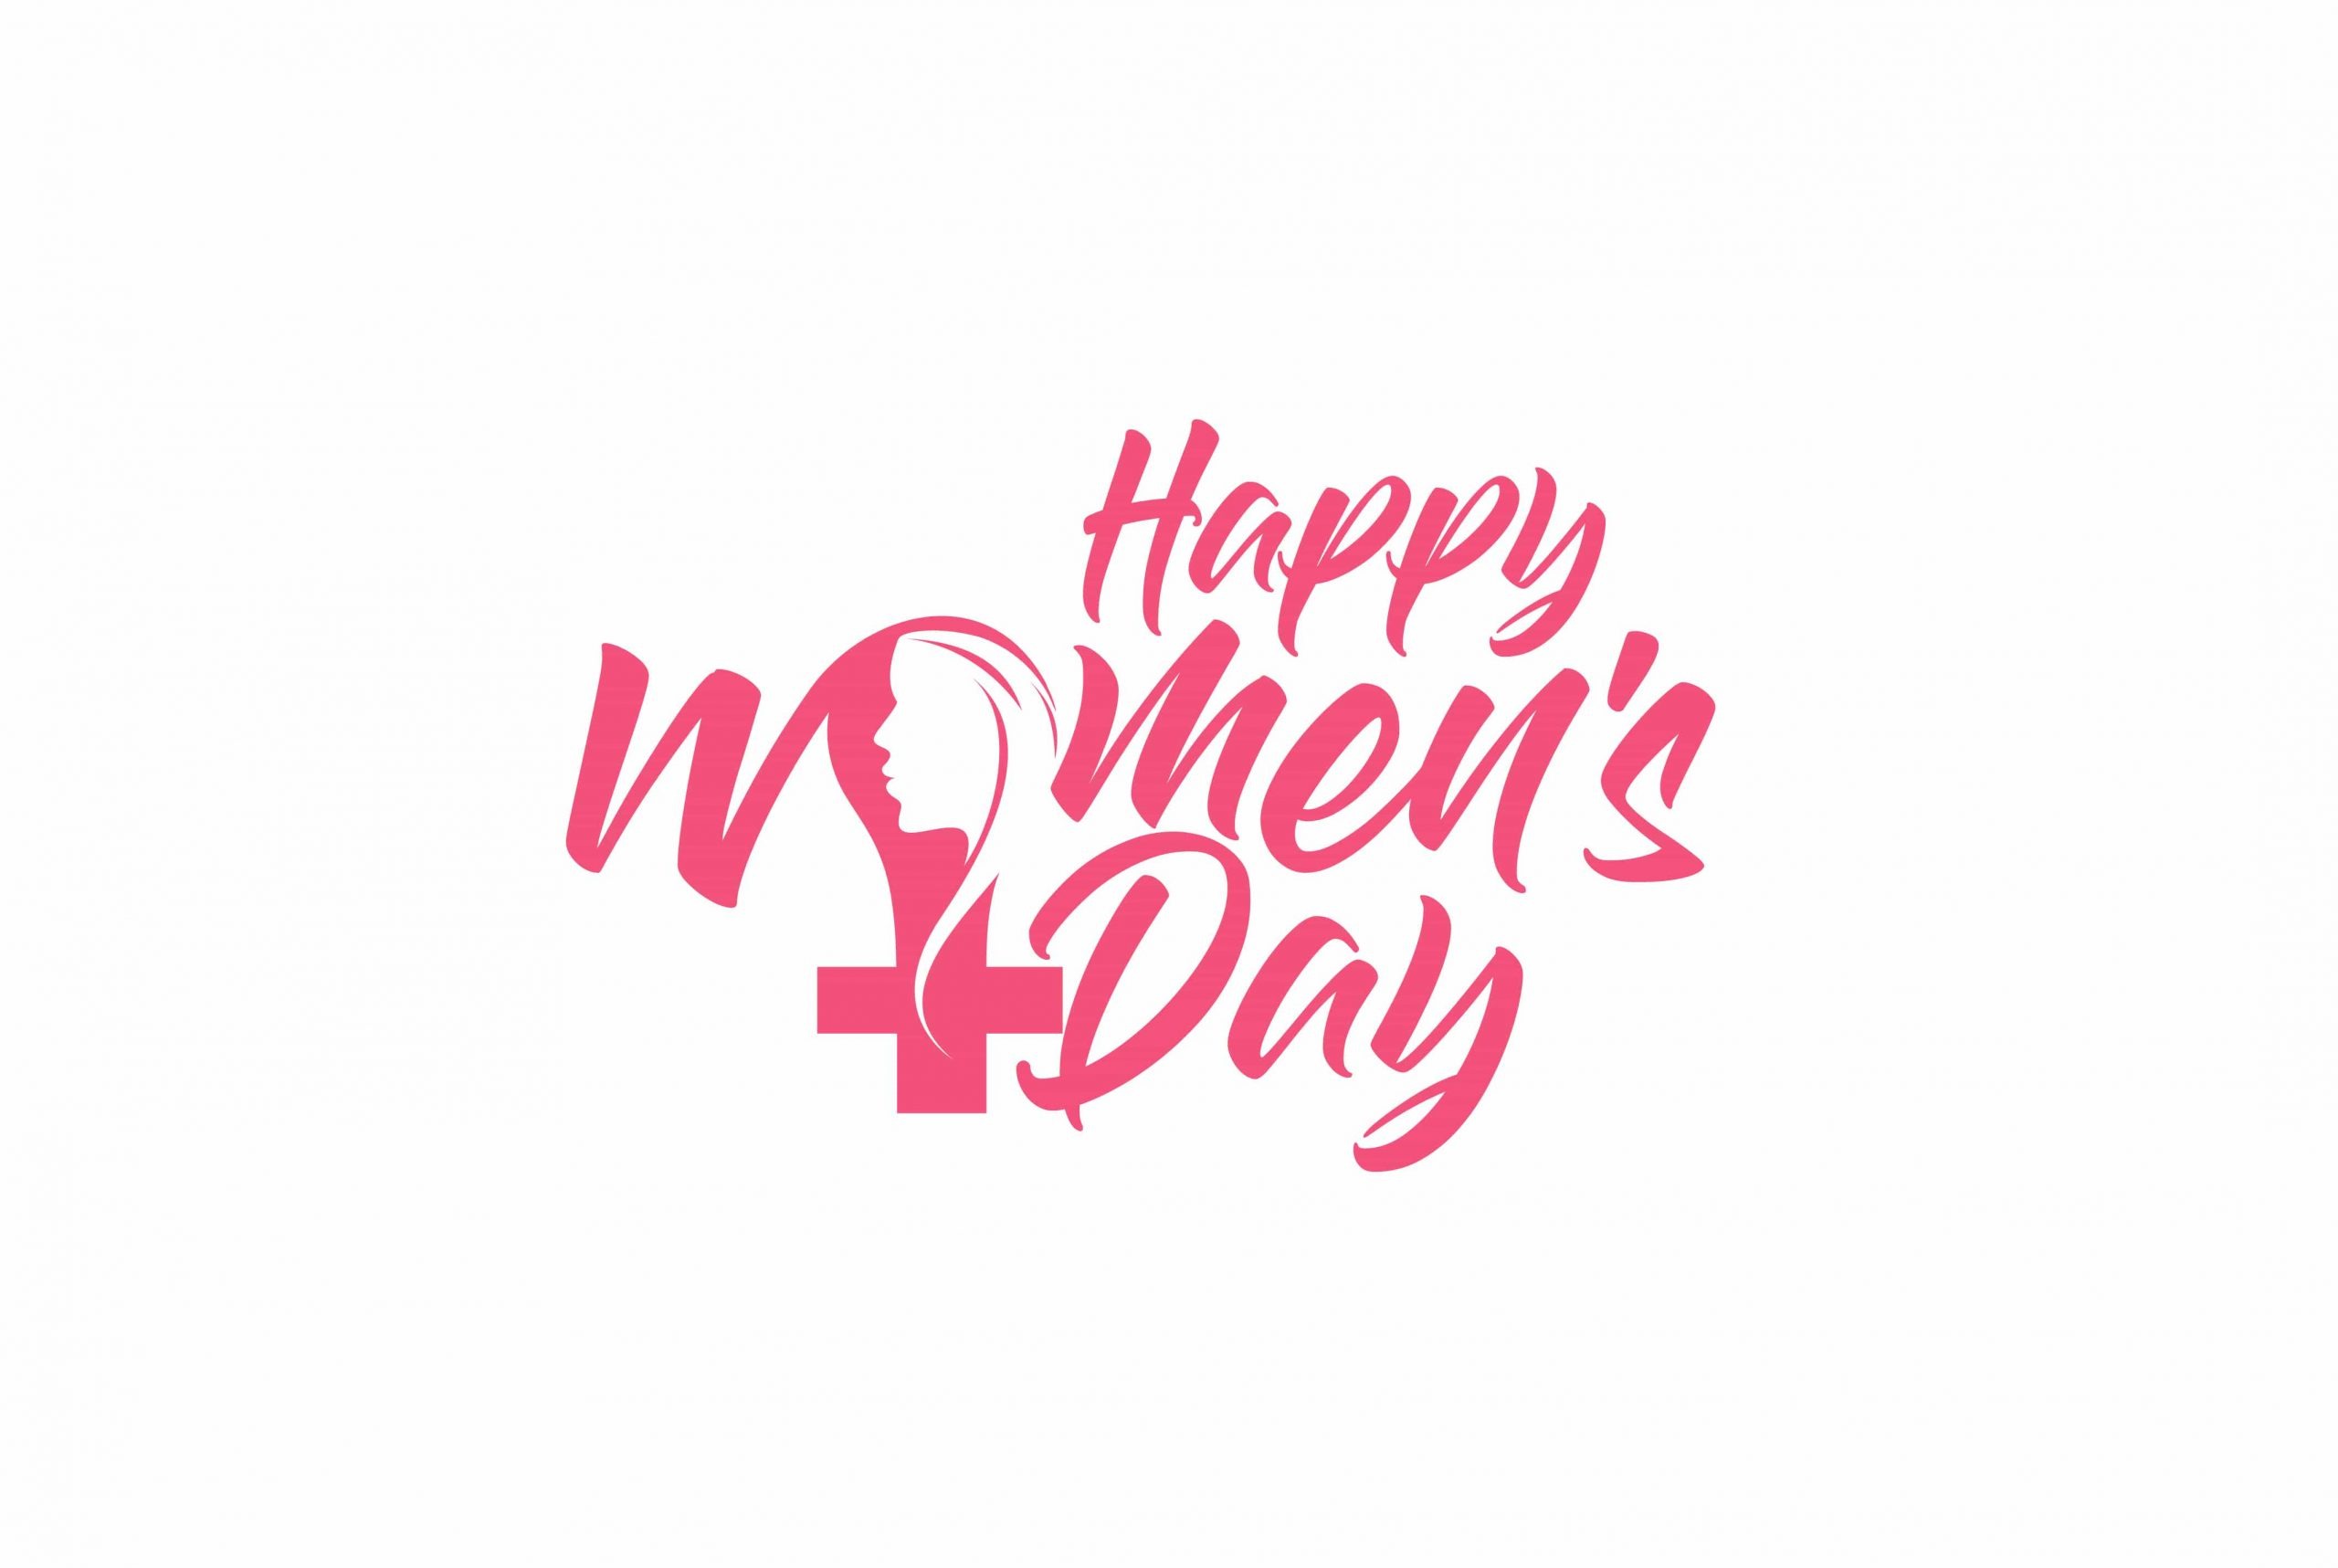 Happy Women's Day wallpaper Download